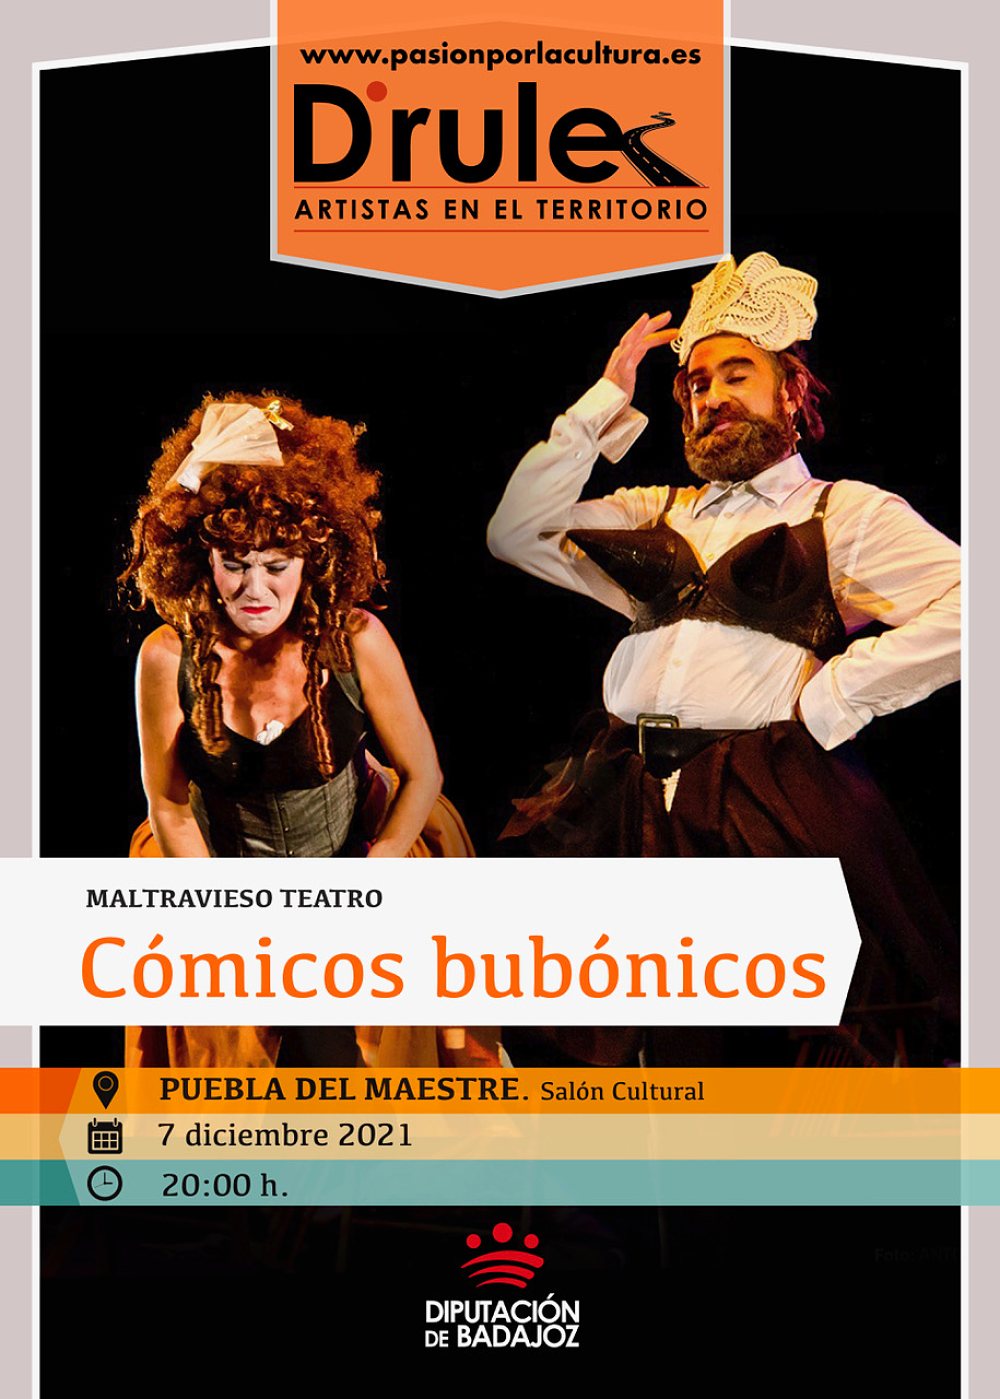 TEATRO | D'Rule 21: «Cómicos bubónicos», de Maltravieso Teatro